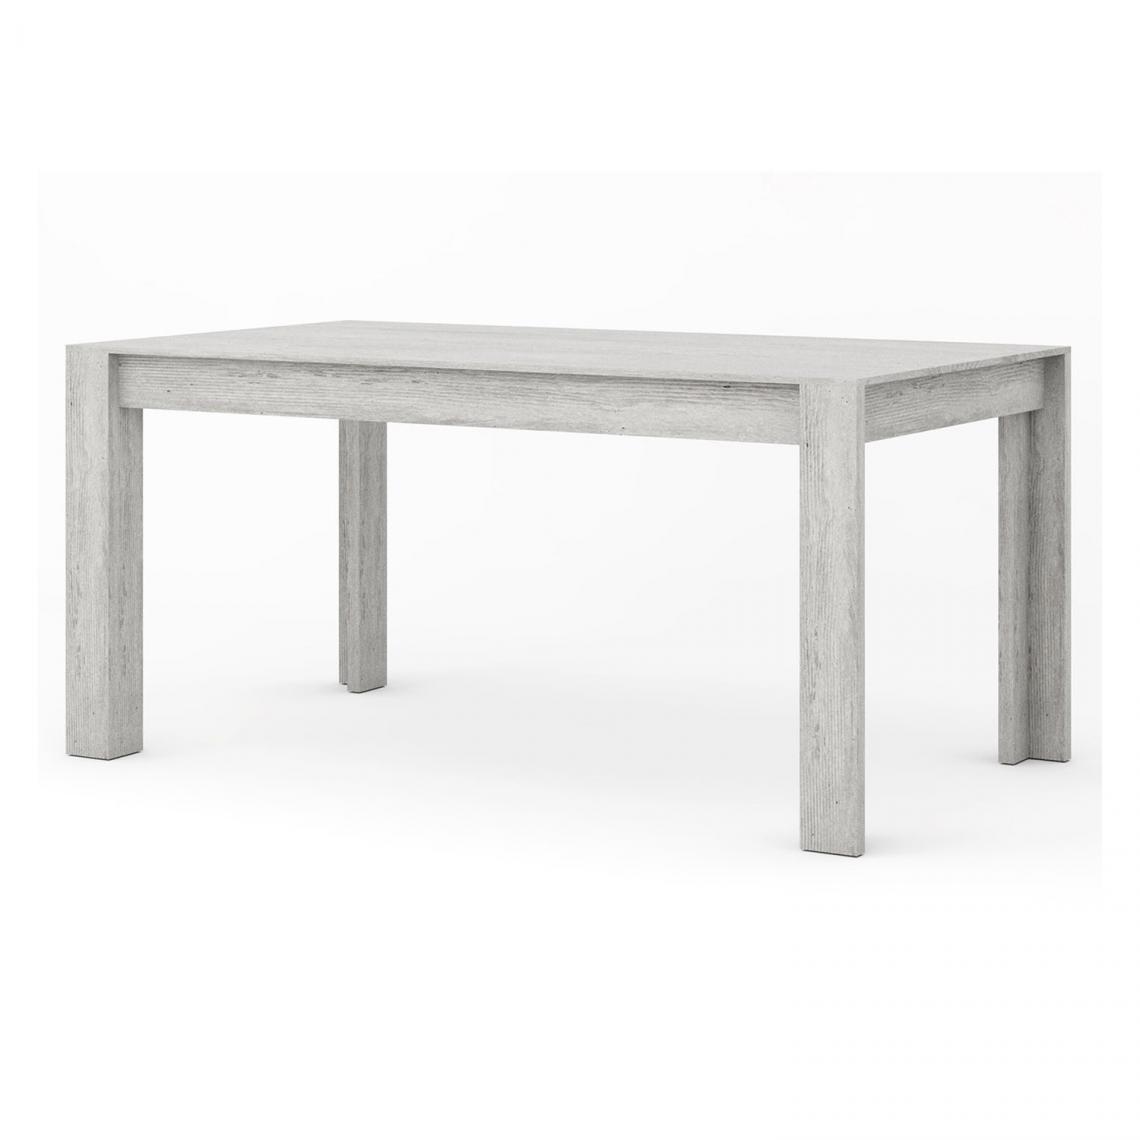 Alter - Table fixe pour salle à manger, Console design moderne, Table de cuisine, Made in Italy, 160x90h76 cm, Couleur ciment - Tables à manger